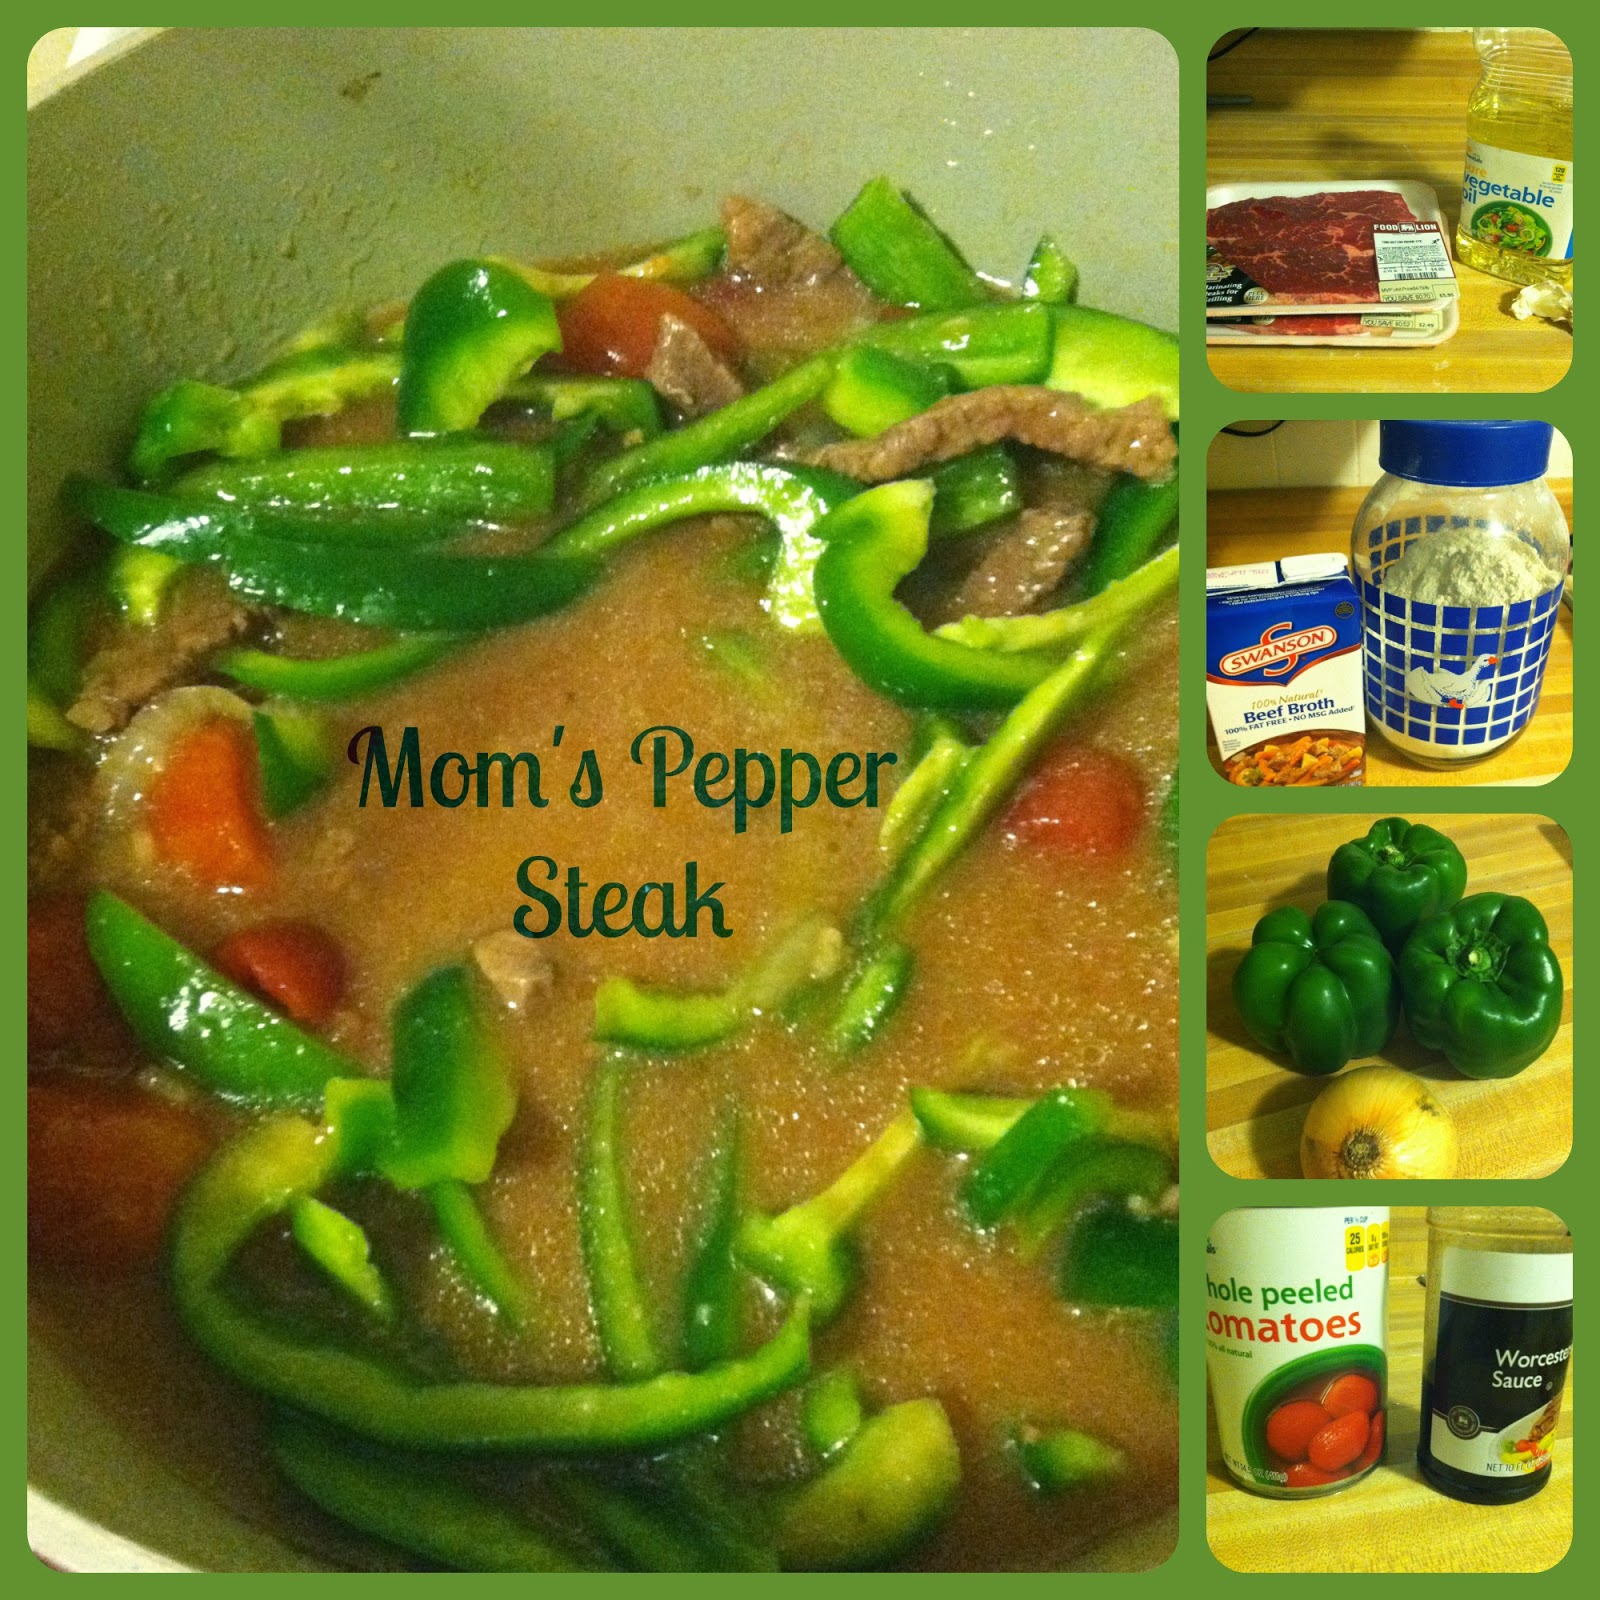 http://www.thelieberfamily.com/2013/11/moms-pepper-steak-recipe.html